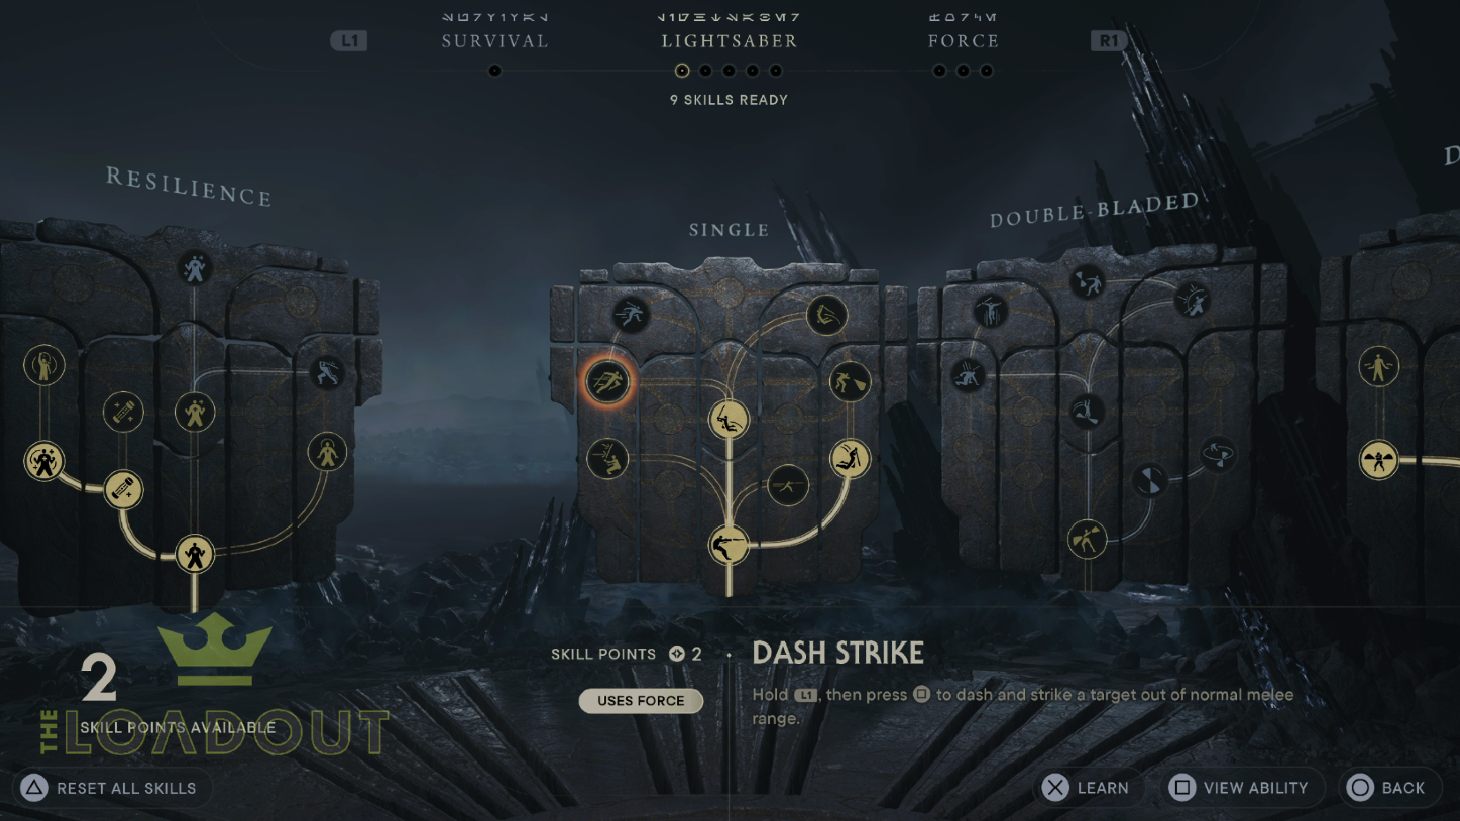 Star Wars Jedi Survivor Best Skills: The Dash Strike skill can be seen